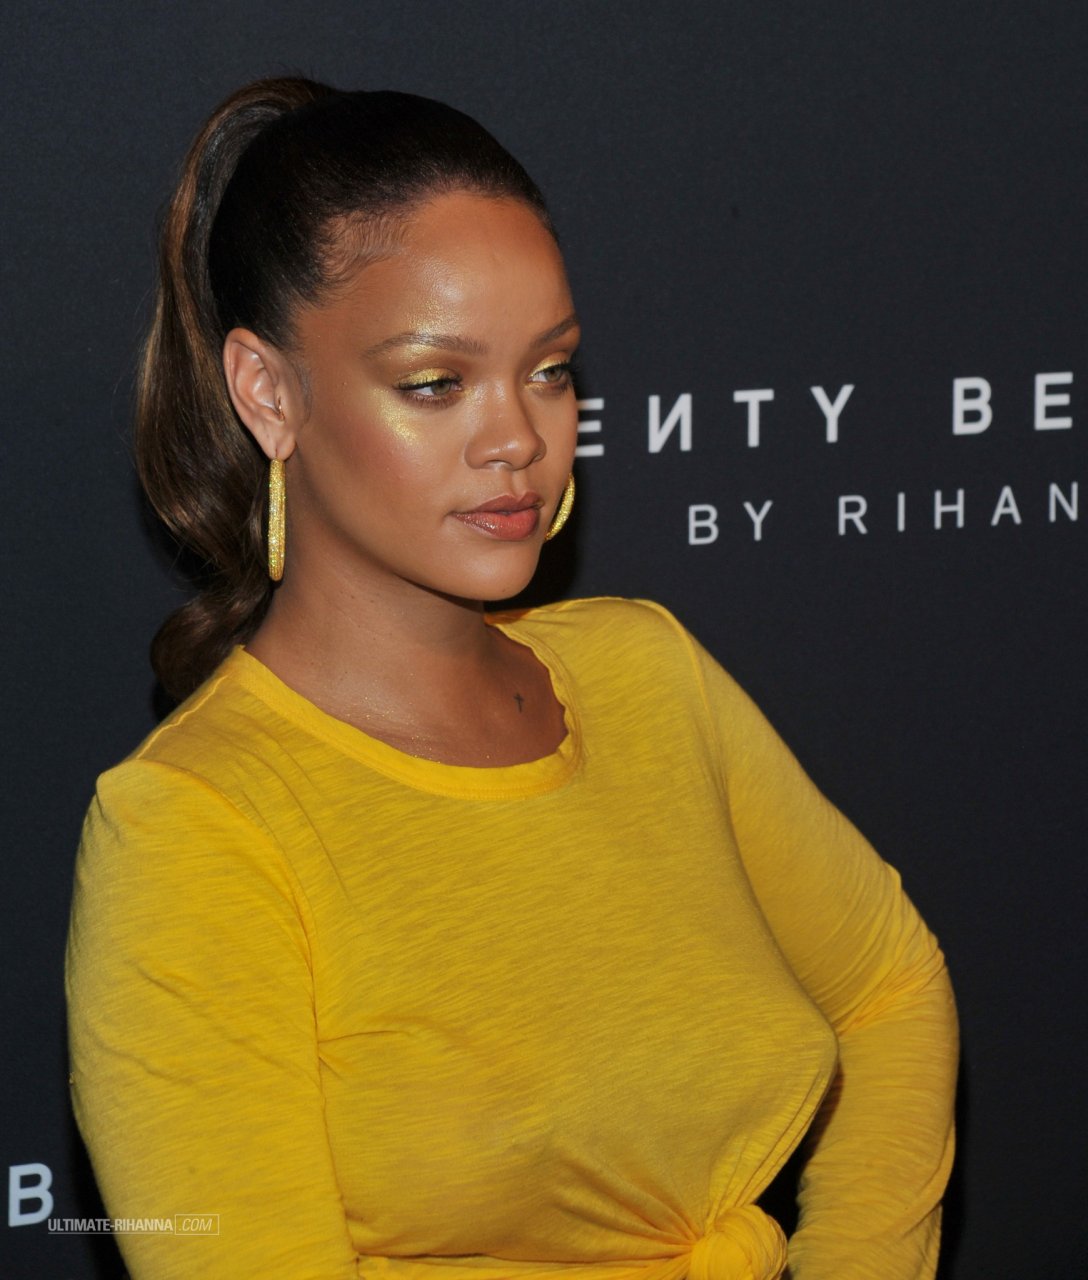 Rihanna Transparente Fotos Video Actualizado Celebridad Desnuda